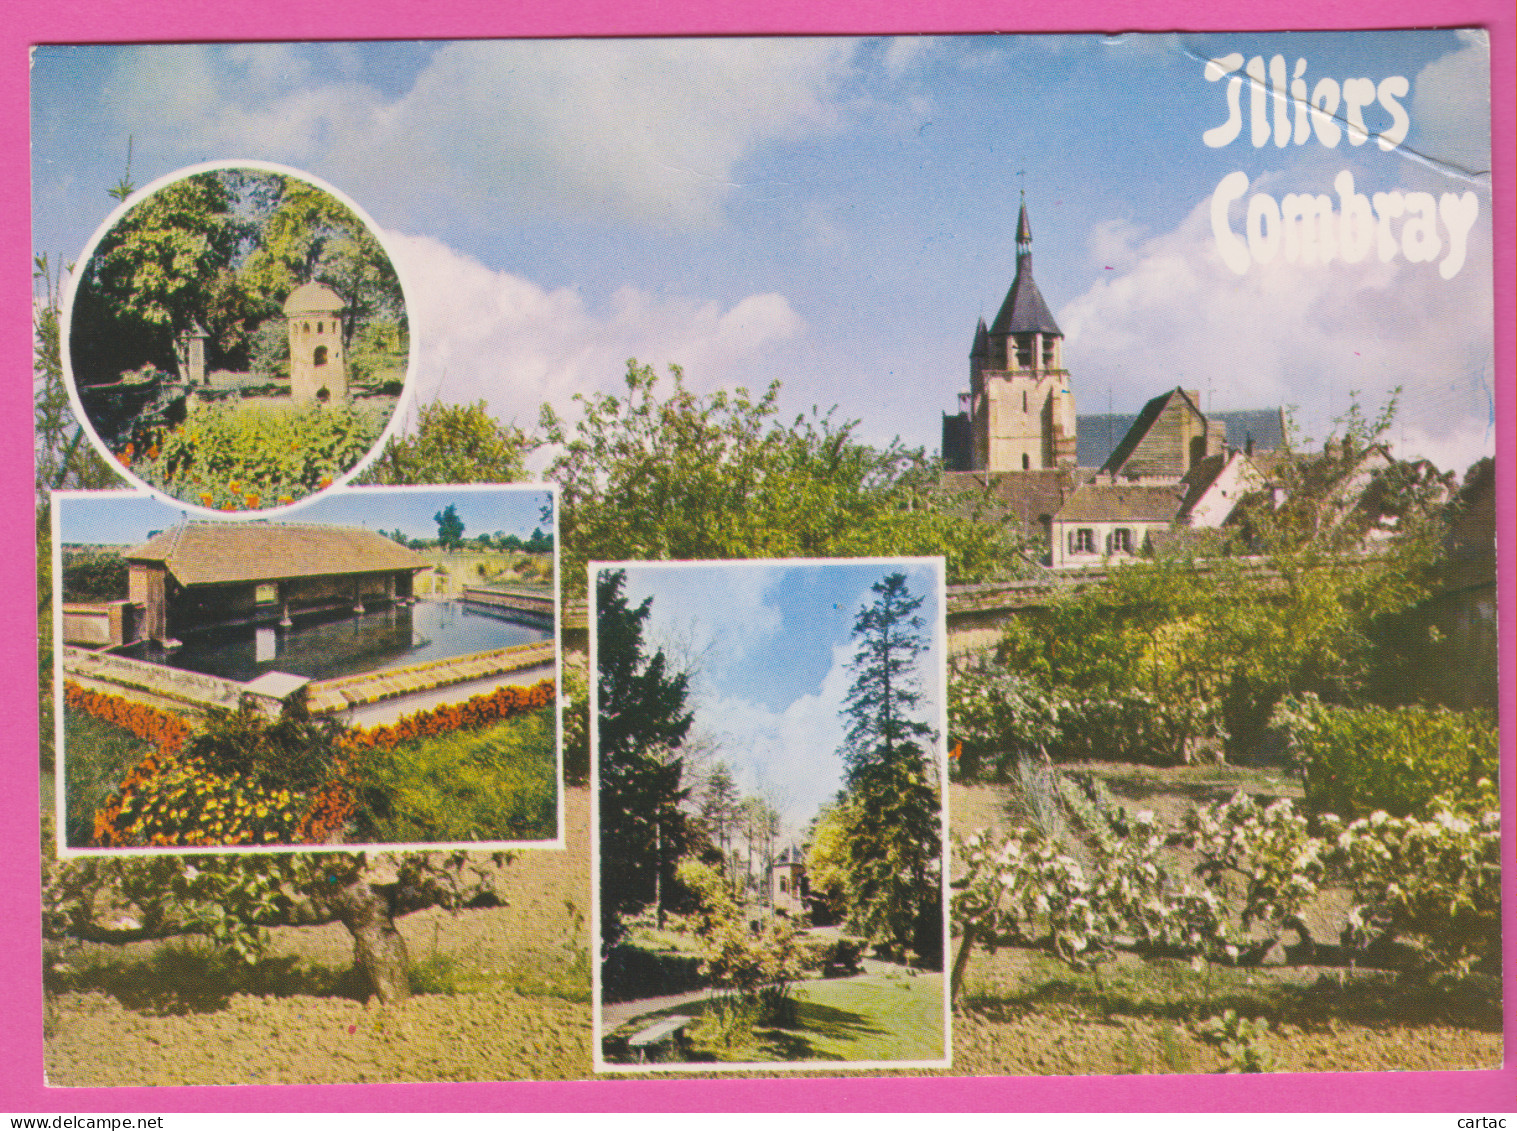 D28 - ILLIERS COMBRAY - Église - Lavoir - Jardin - CPM Colorisée Grand Format - Coll. "Maison De La Presse" - Illiers-Combray